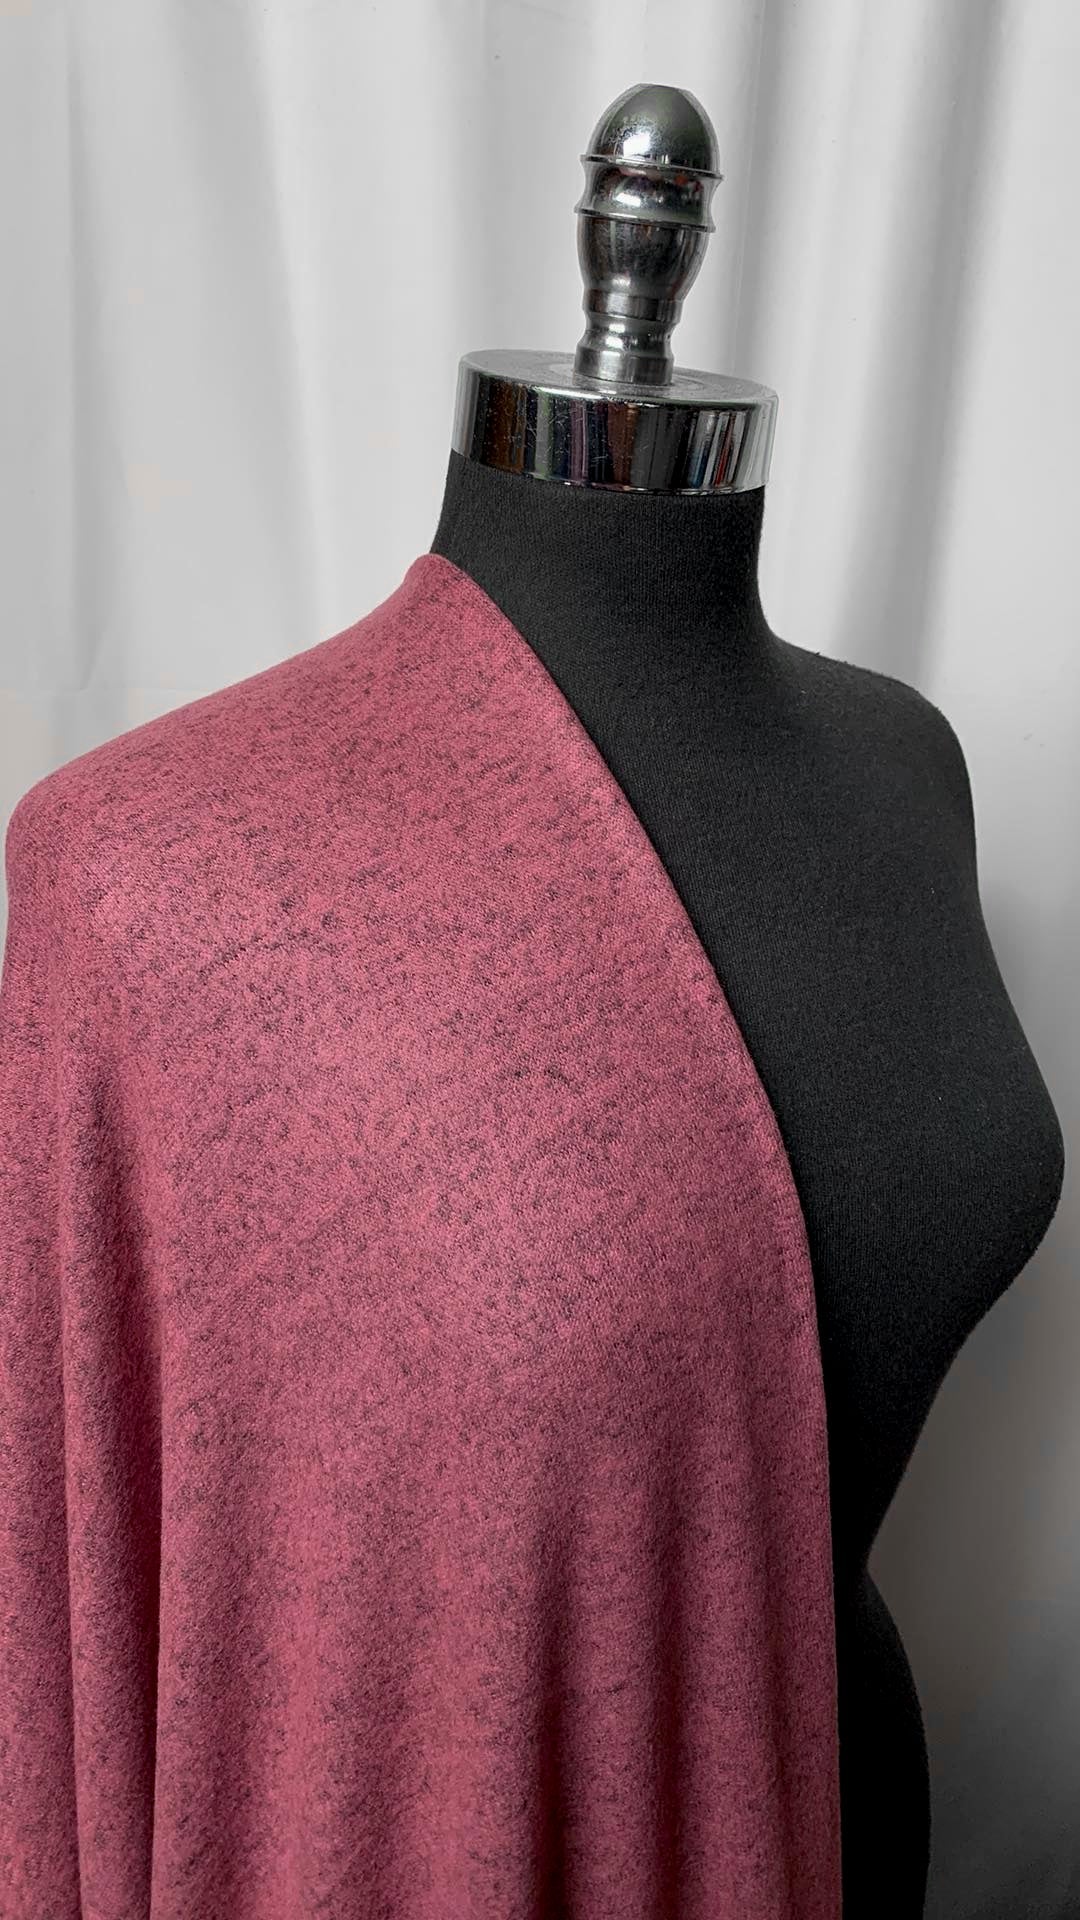 Rose - Super Soft Hacci Sweater Knit - 2 Yard Cut